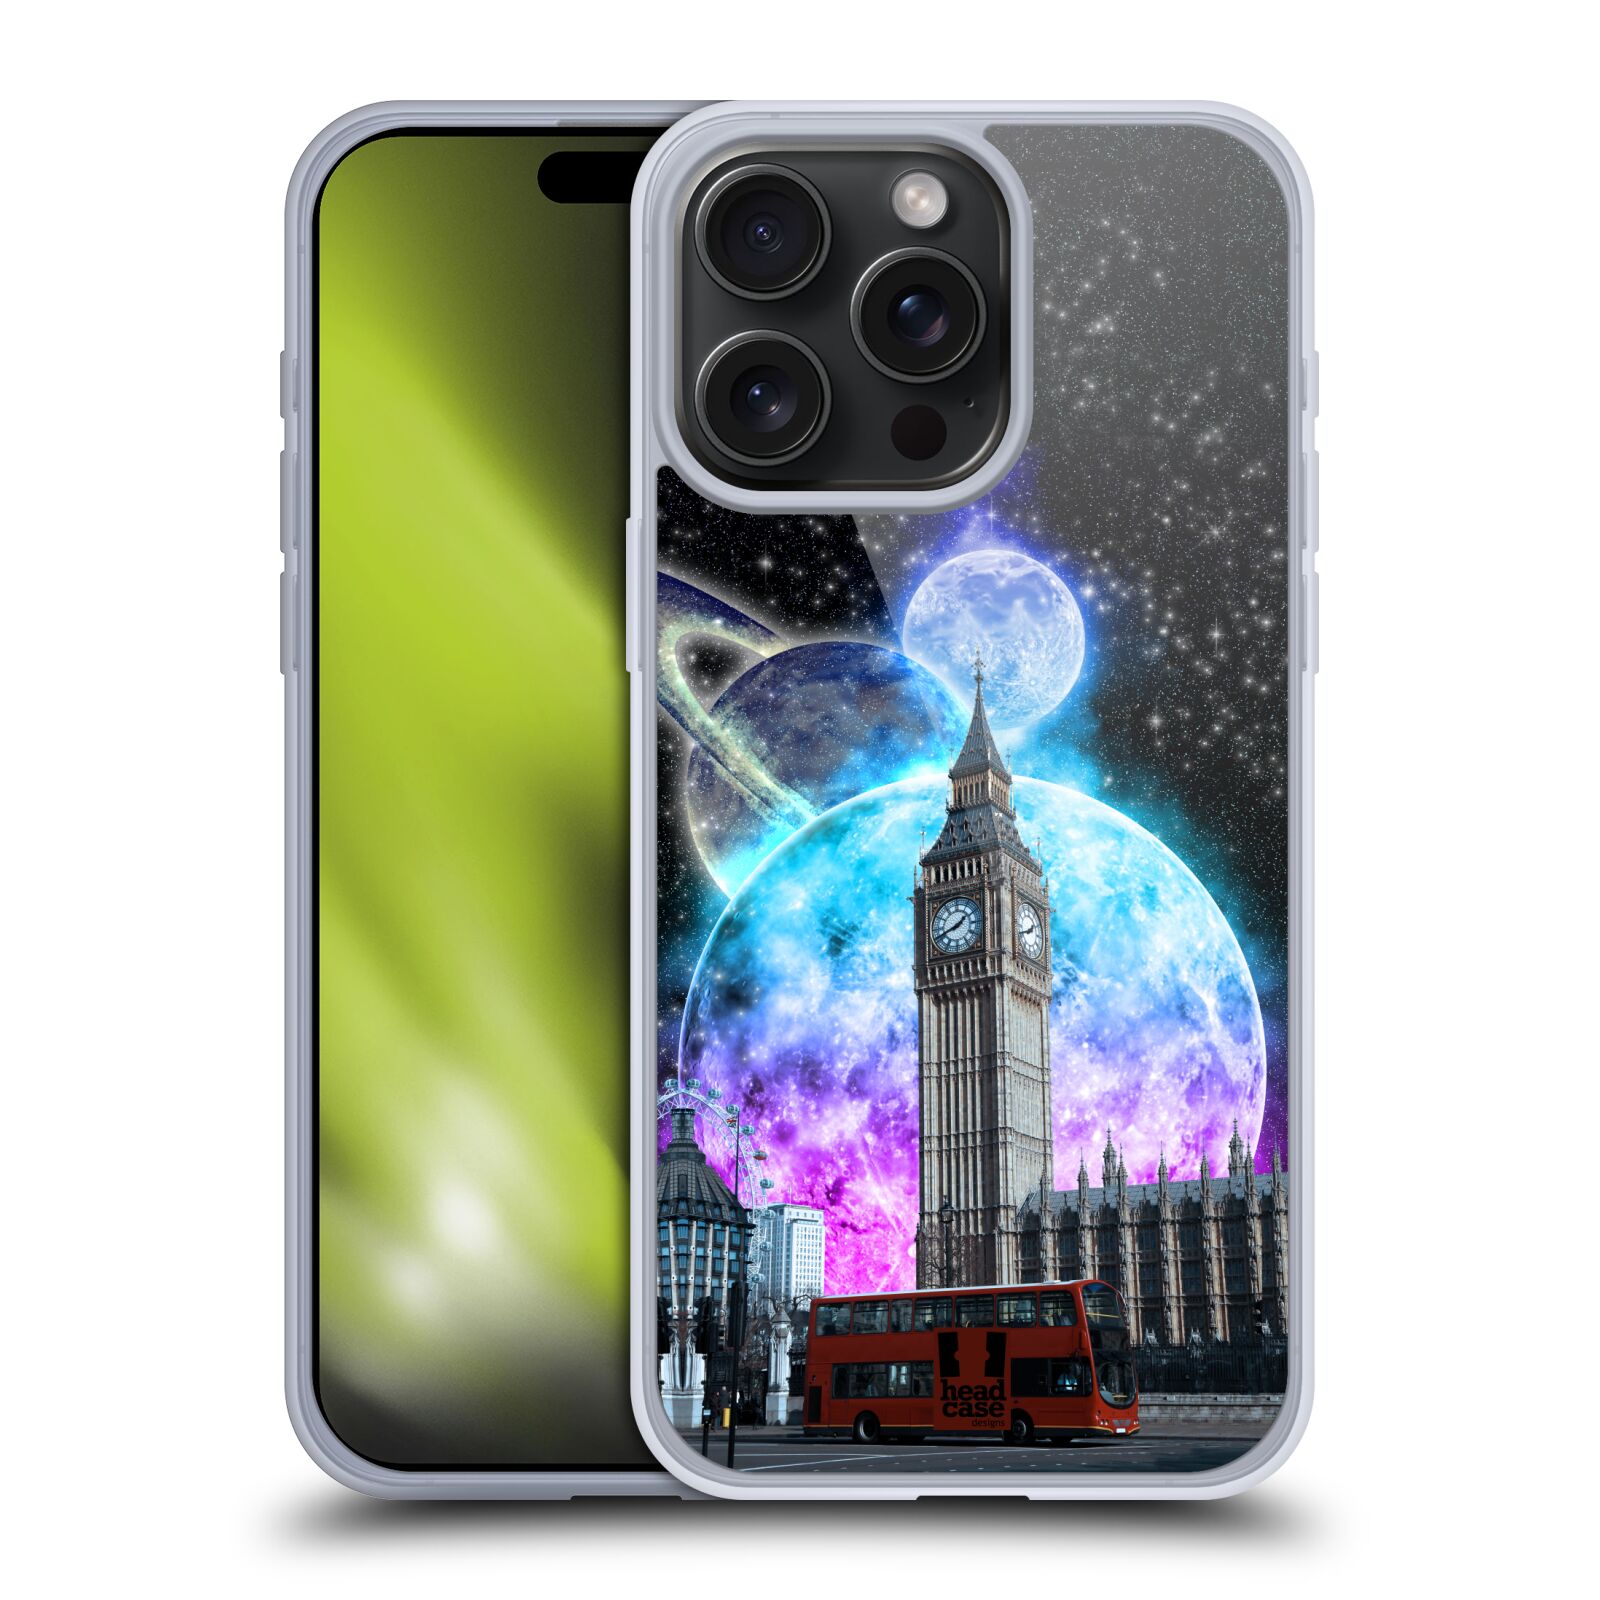 Silikonové lesklé pouzdro na mobil Apple iPhone 15 Pro Max - Head Case - Měsíční Londýn (Silikonový lesklý kryt, obal, pouzdro na mobilní telefon Apple iPhone 15 Pro Max s motivem Měsíční Londýn)